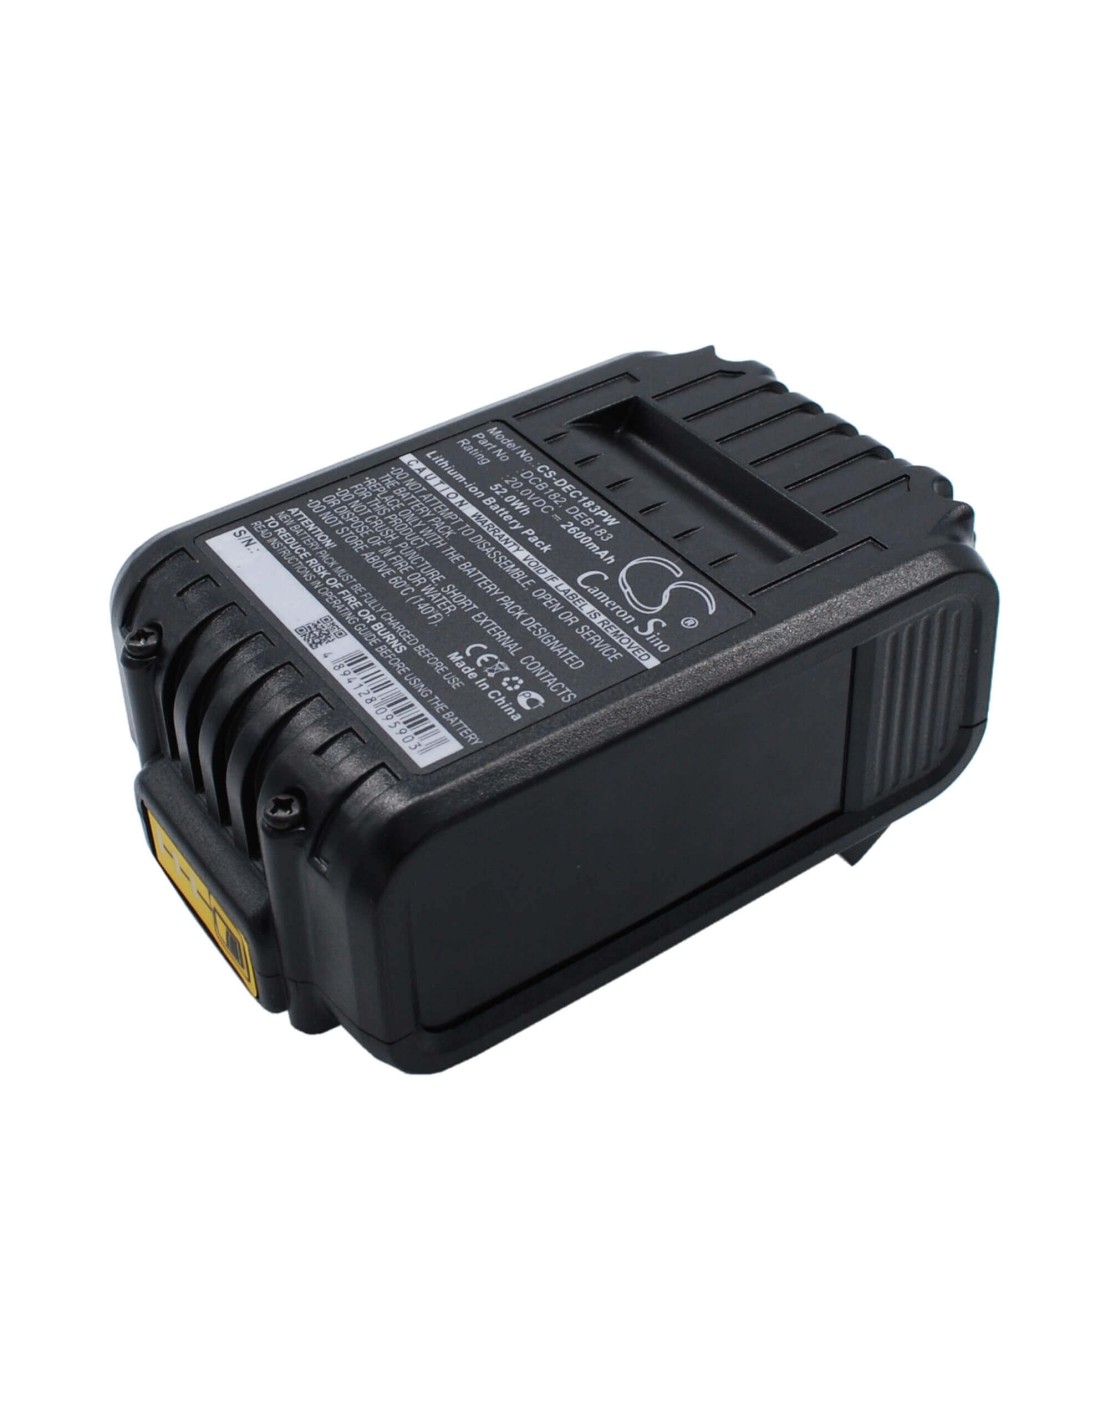 Battery for Dewalt Dcd740, Dcd740b, Dcd780 20V, 2600mAh - 52.00Wh